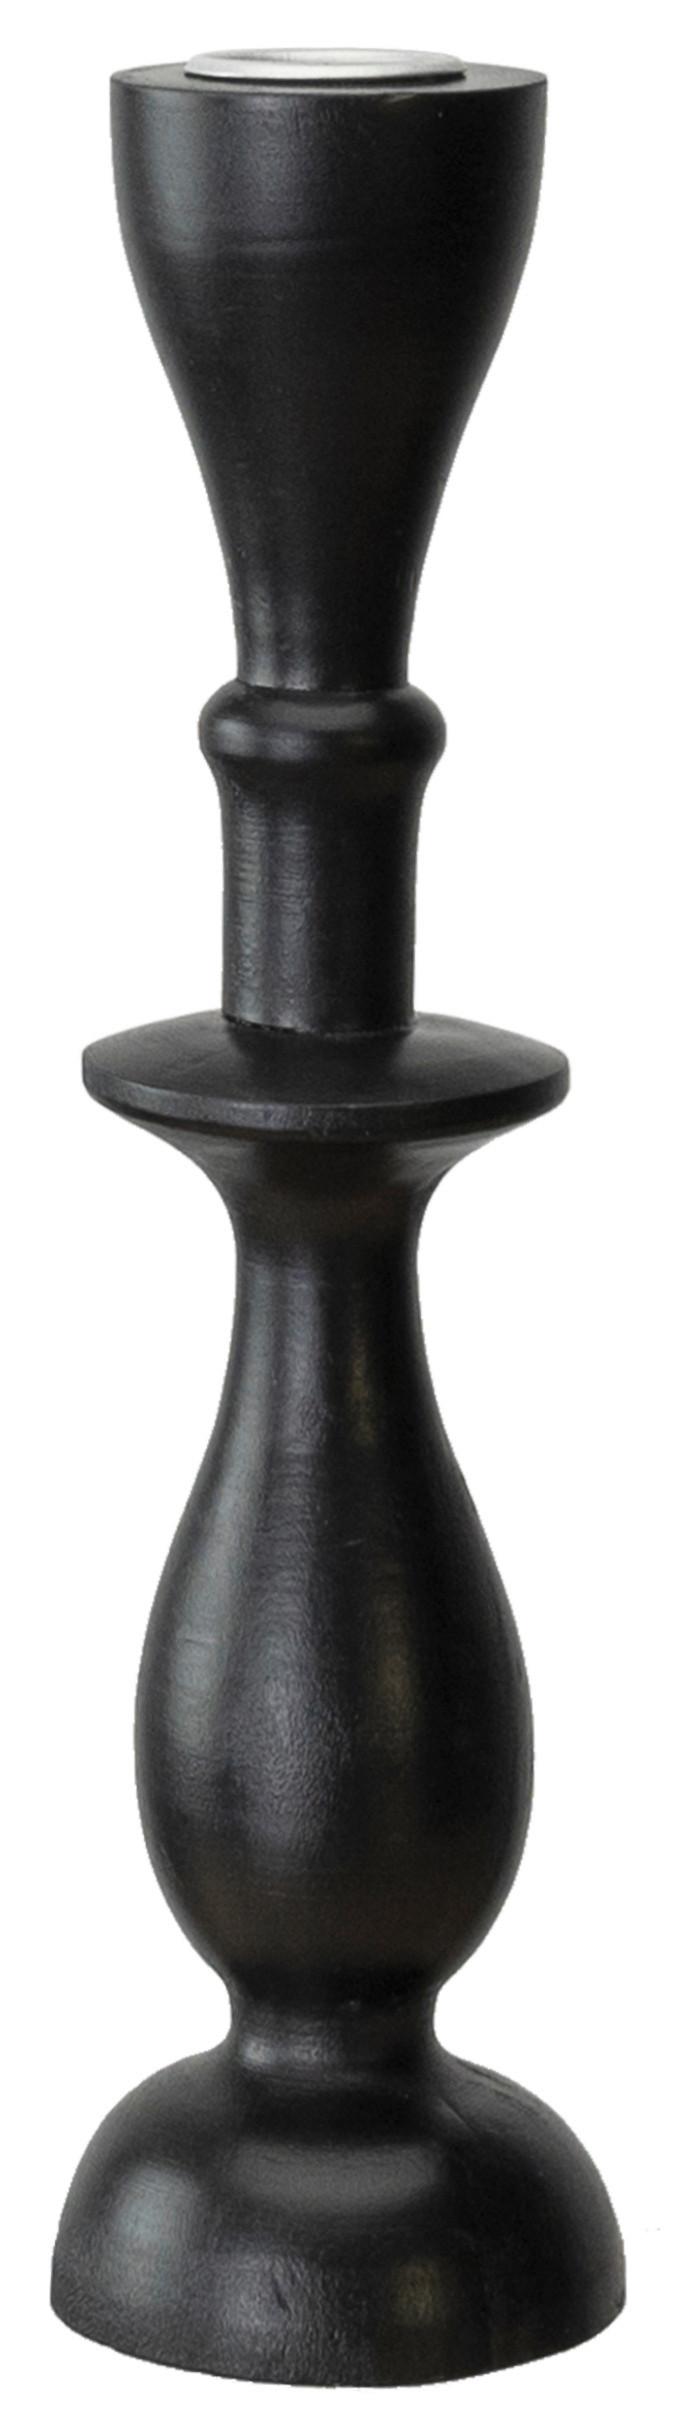 Svietnik Na Dlhé Sviečky Noir, Výška: 23cm - čierna, kov/kompozitné drevo (7,3/22,7cm) - Modern Living